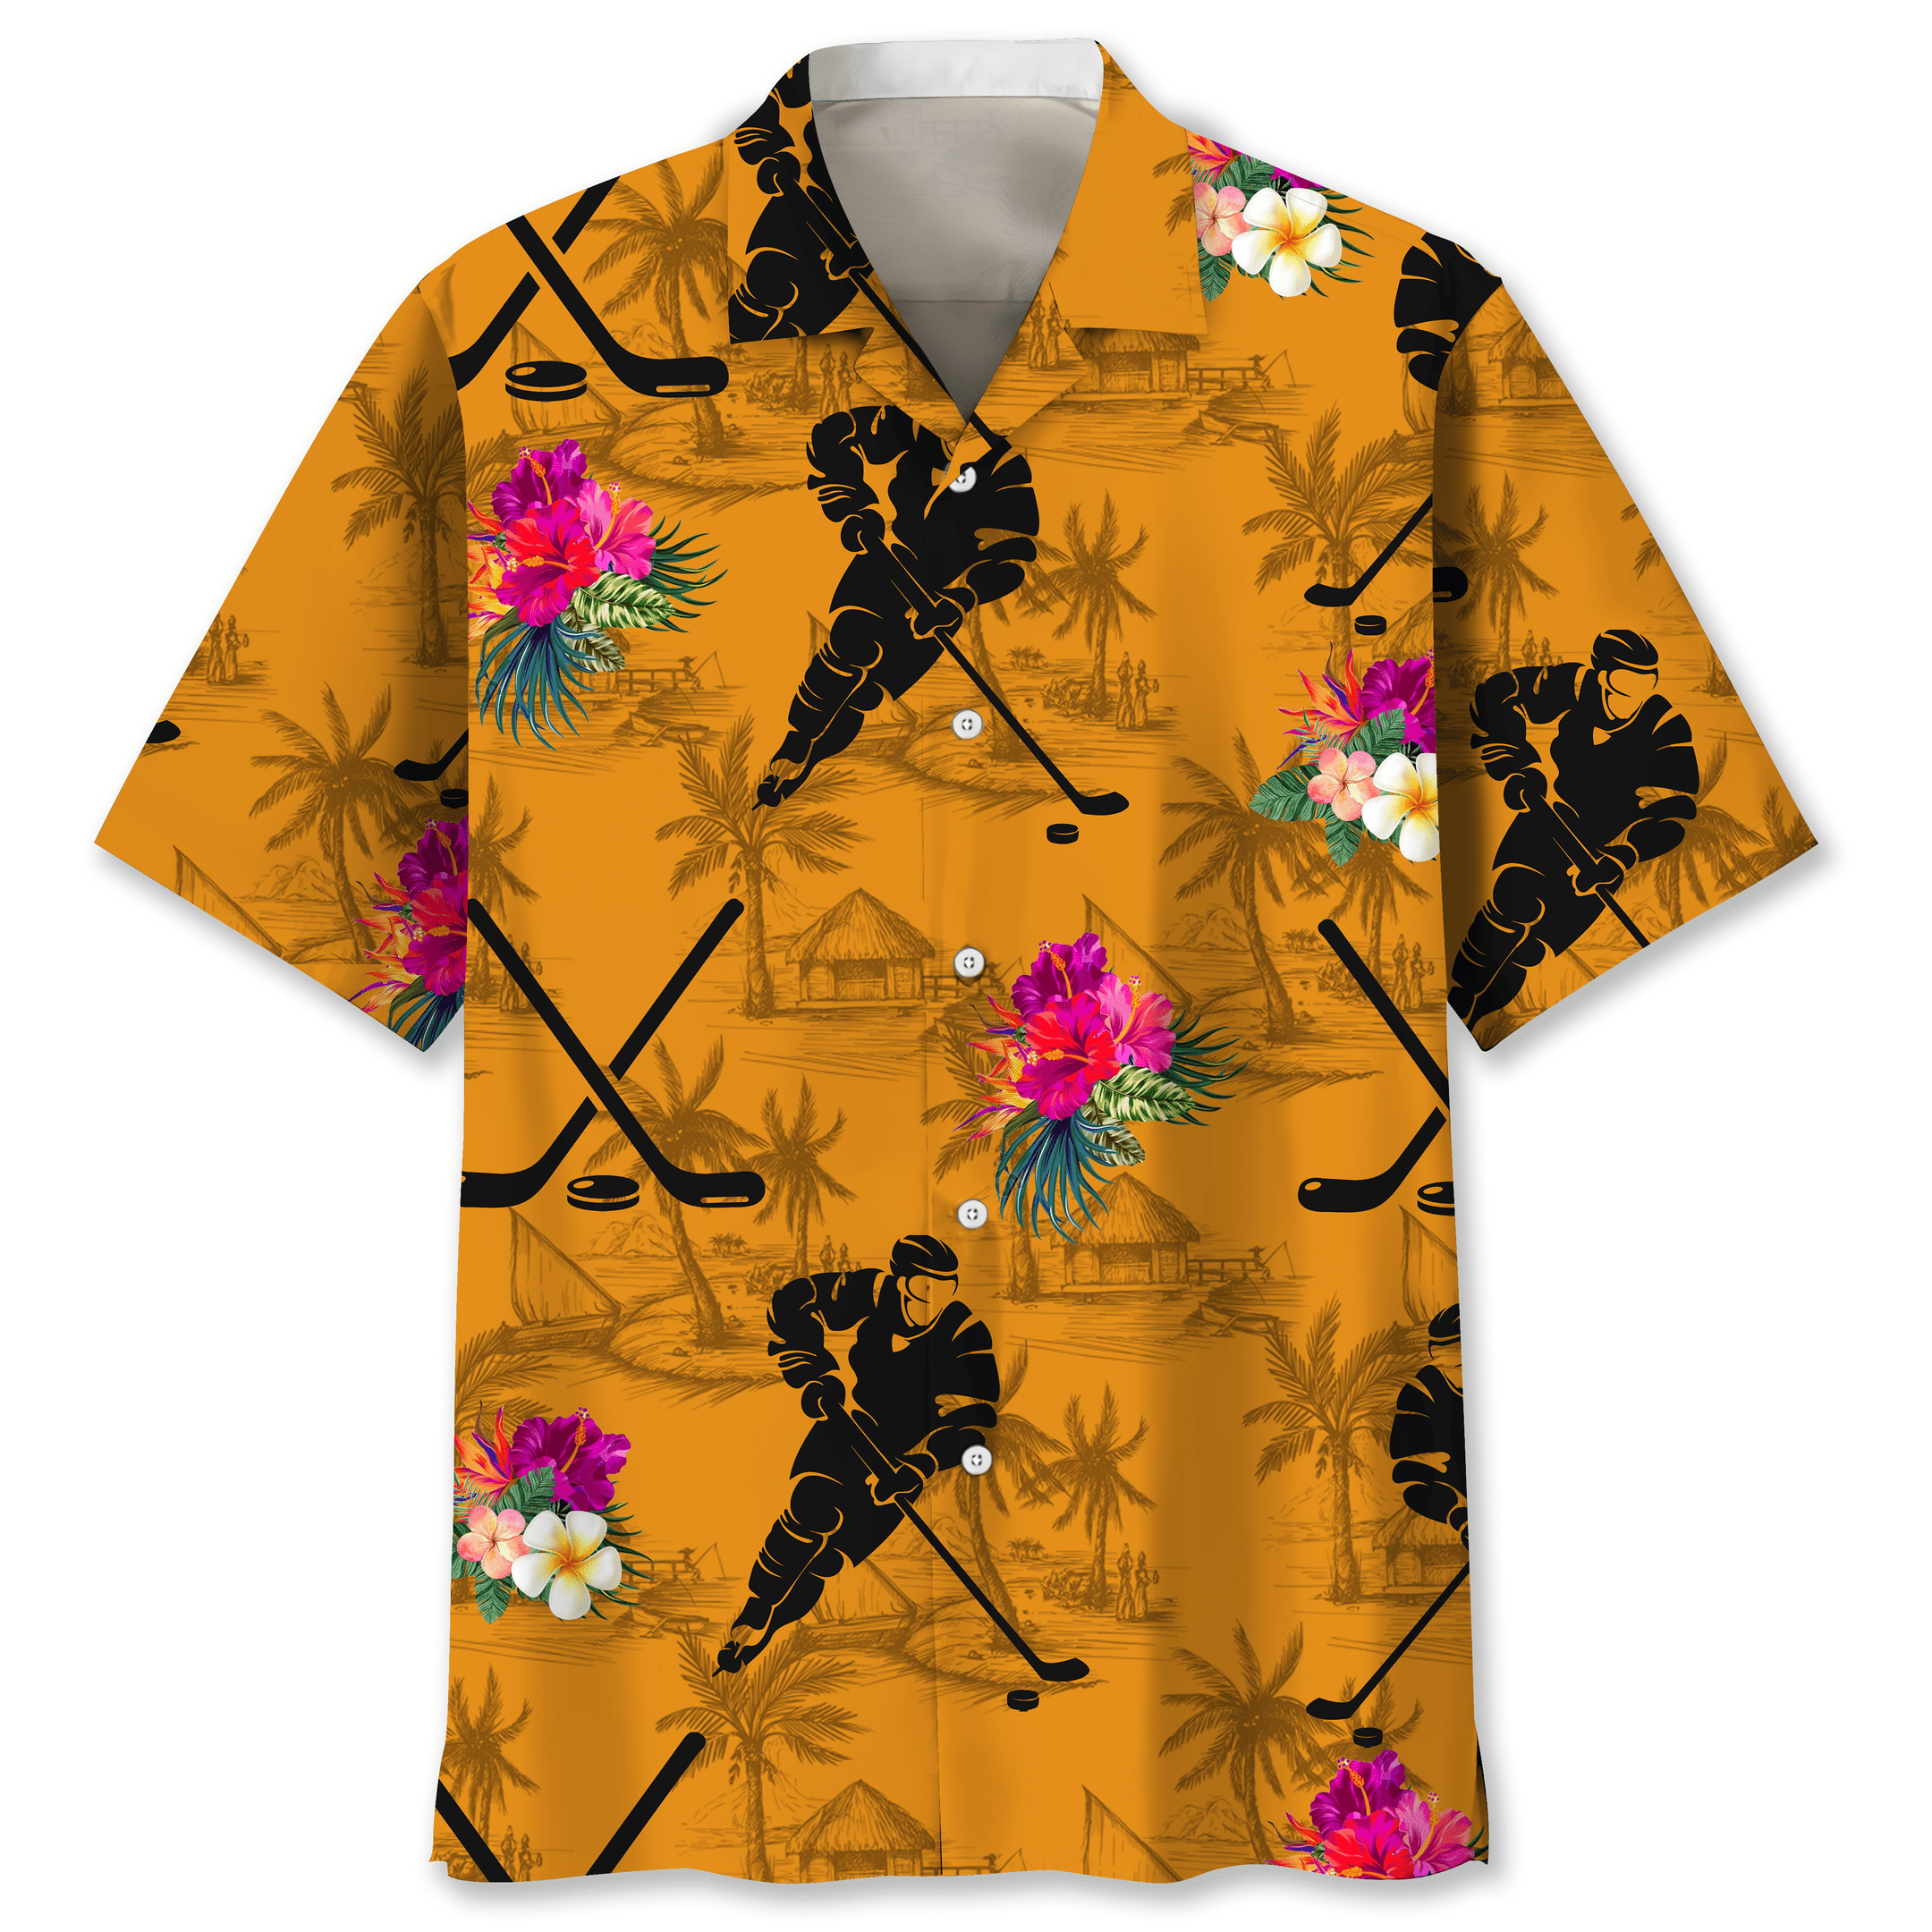 NEW Hockey Orange Tropical Hawaiian Shirt